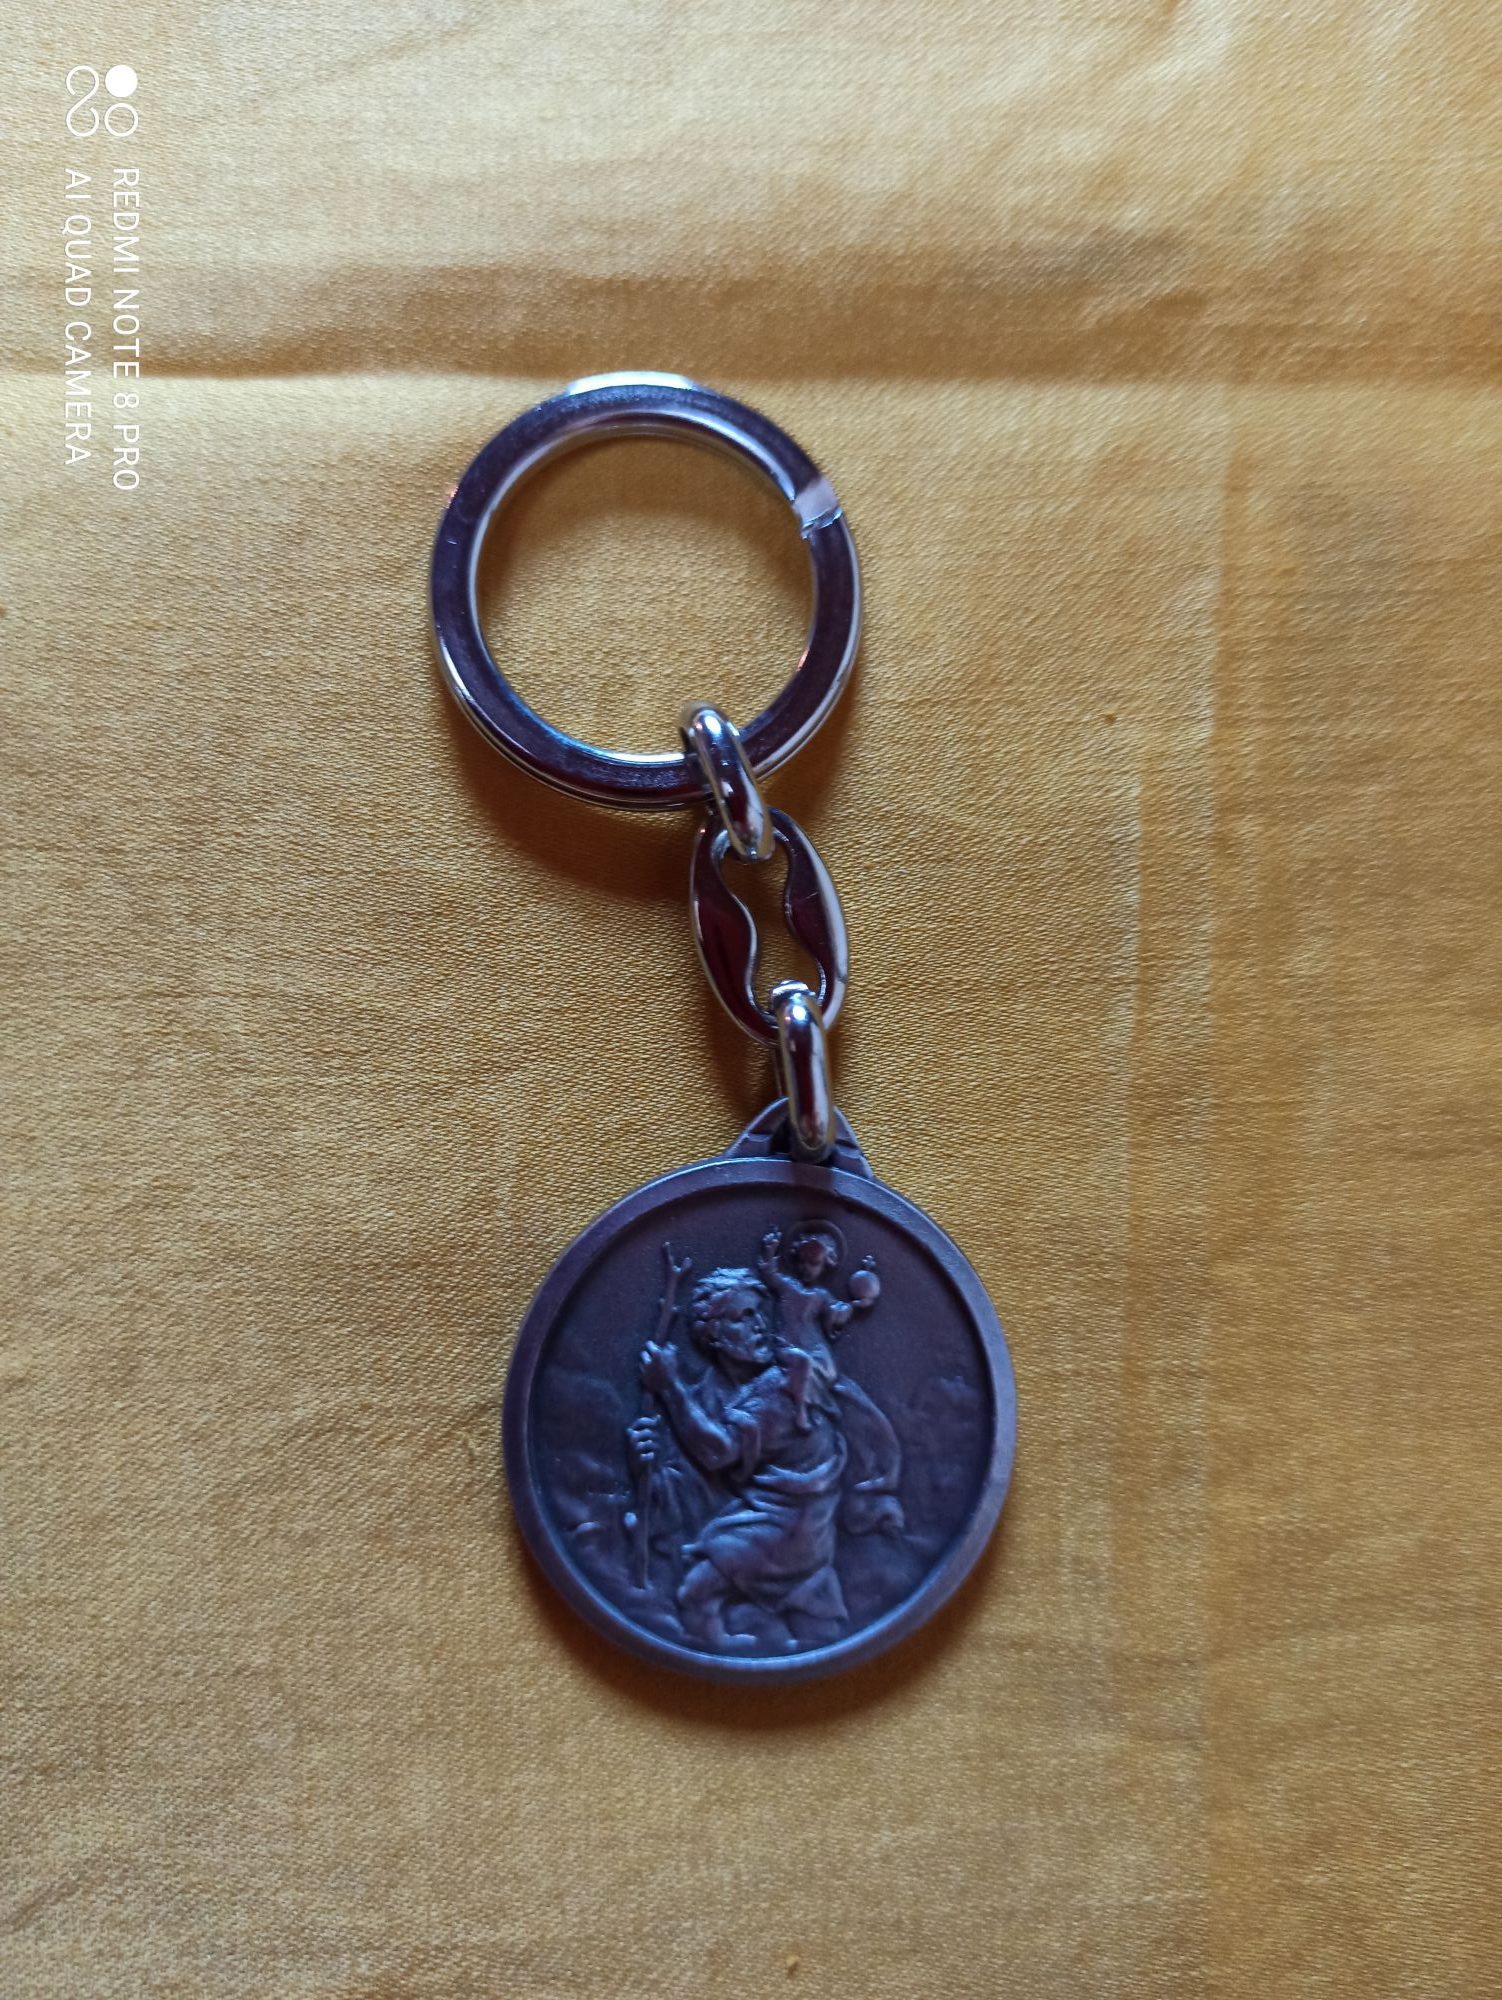 Porte-clés Saint Christophe (galet)  Edition du Parvis - Librairie  religieuse